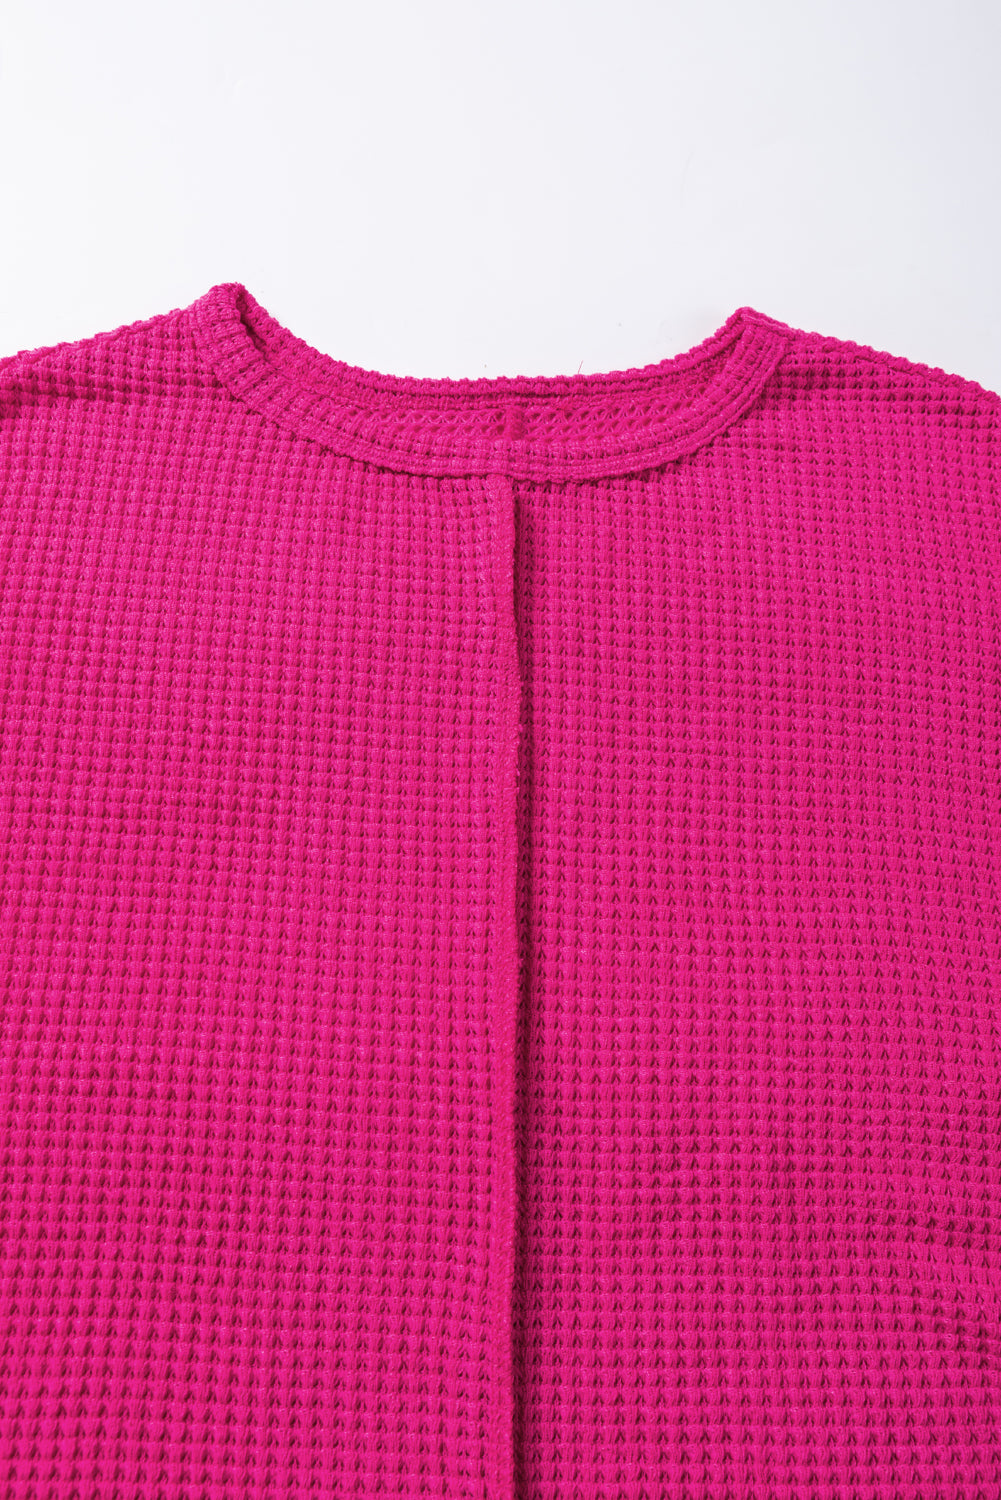 Ružičasto crvena teksturirana majica dugih rukava sa središnjim šavom s podijeljenim rukavima